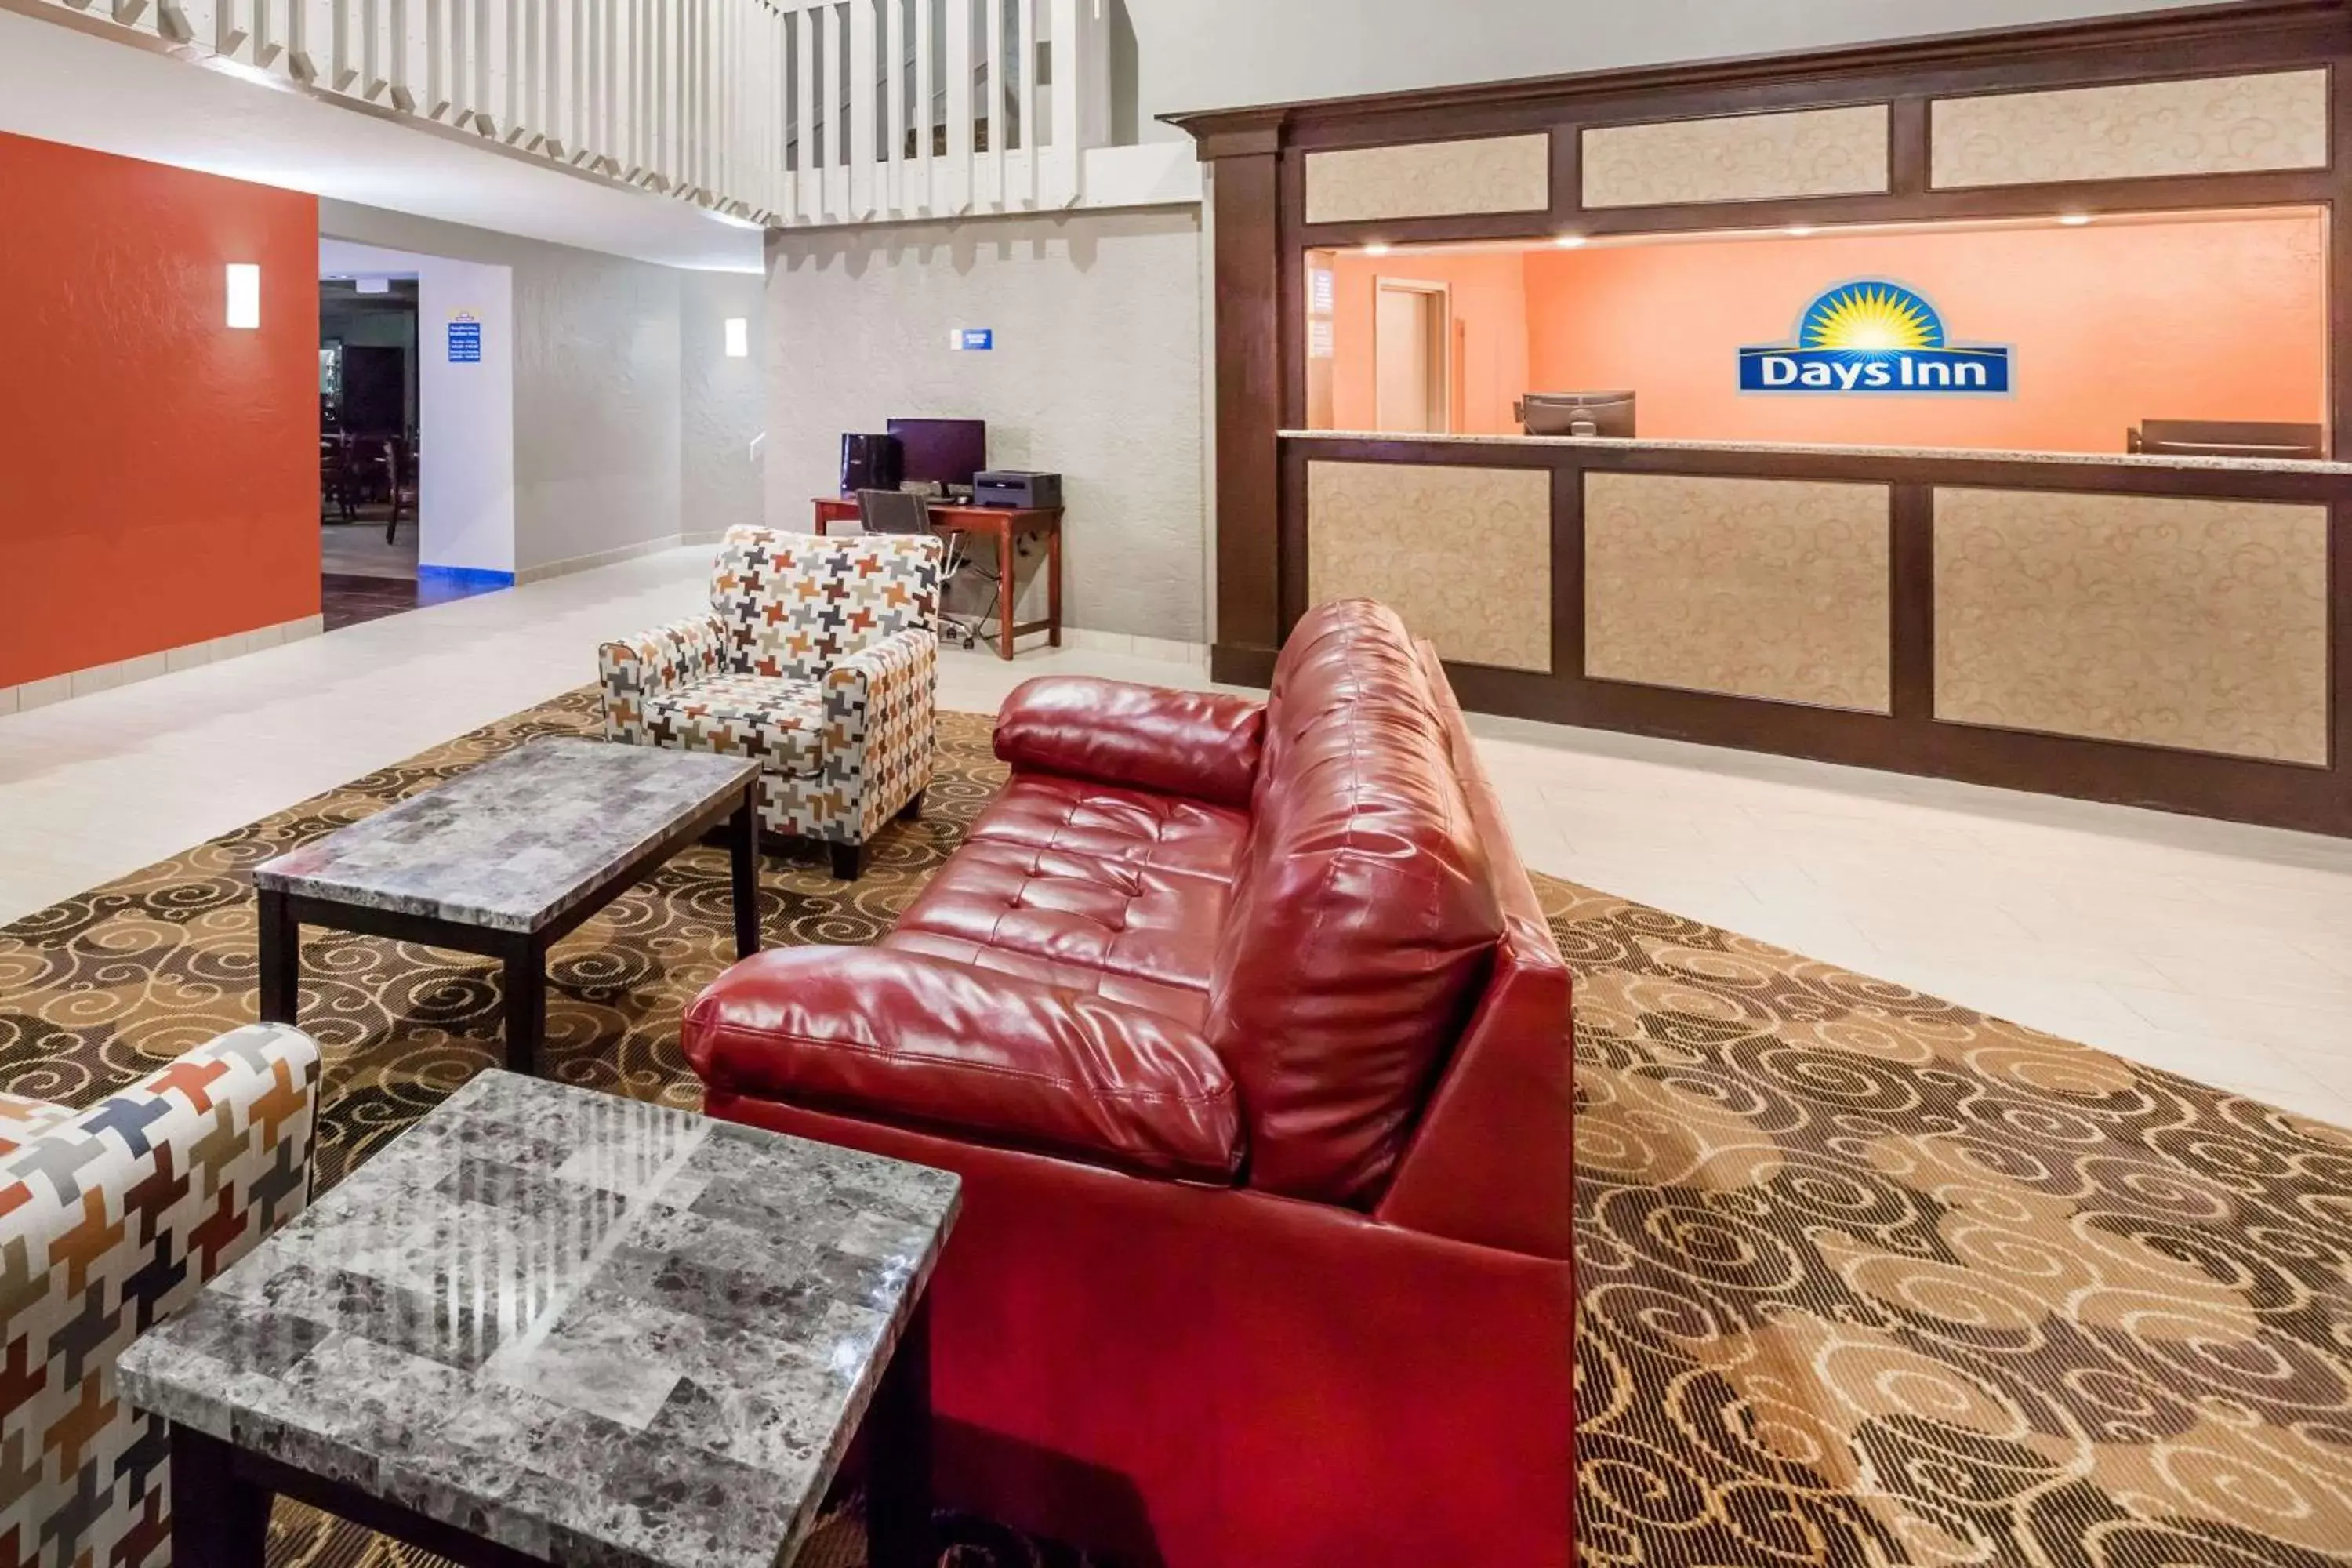 Lobby or reception in Days Inn by Wyndham West Des Moines